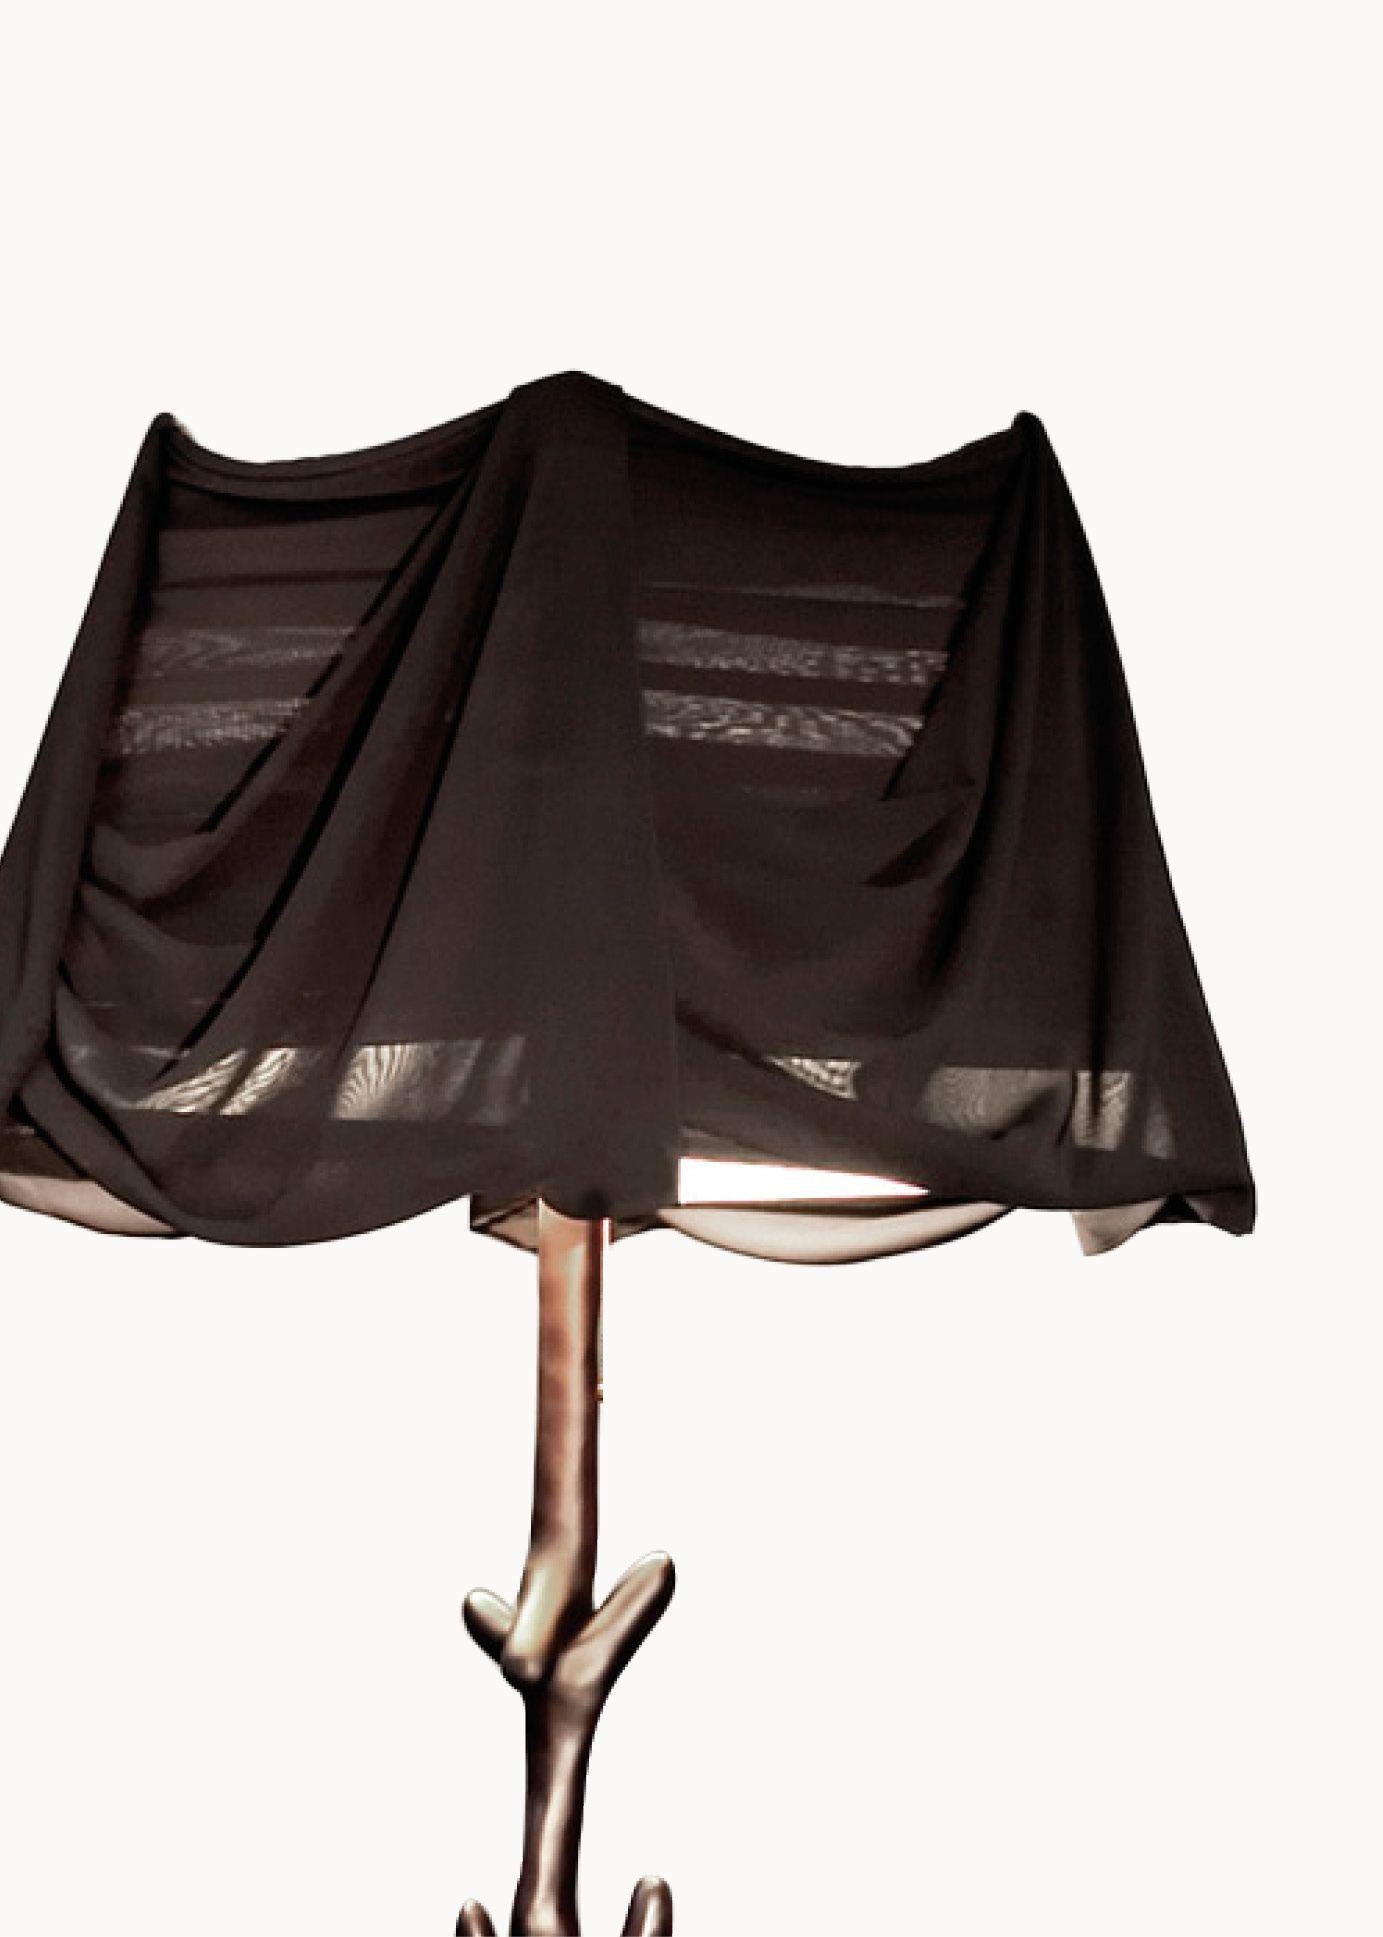 Muletas-Lampe, entworfen von Salvador Dali, hergestellt von BD furniture in Barcelona.

Limitierte Auflage
Gefärbter Lindenholz-Satin in Schwarz.
Lampenschirm aus transparentem schwarzem Chiffon.

Raffinierte MATERIALIEN und handwerkliche